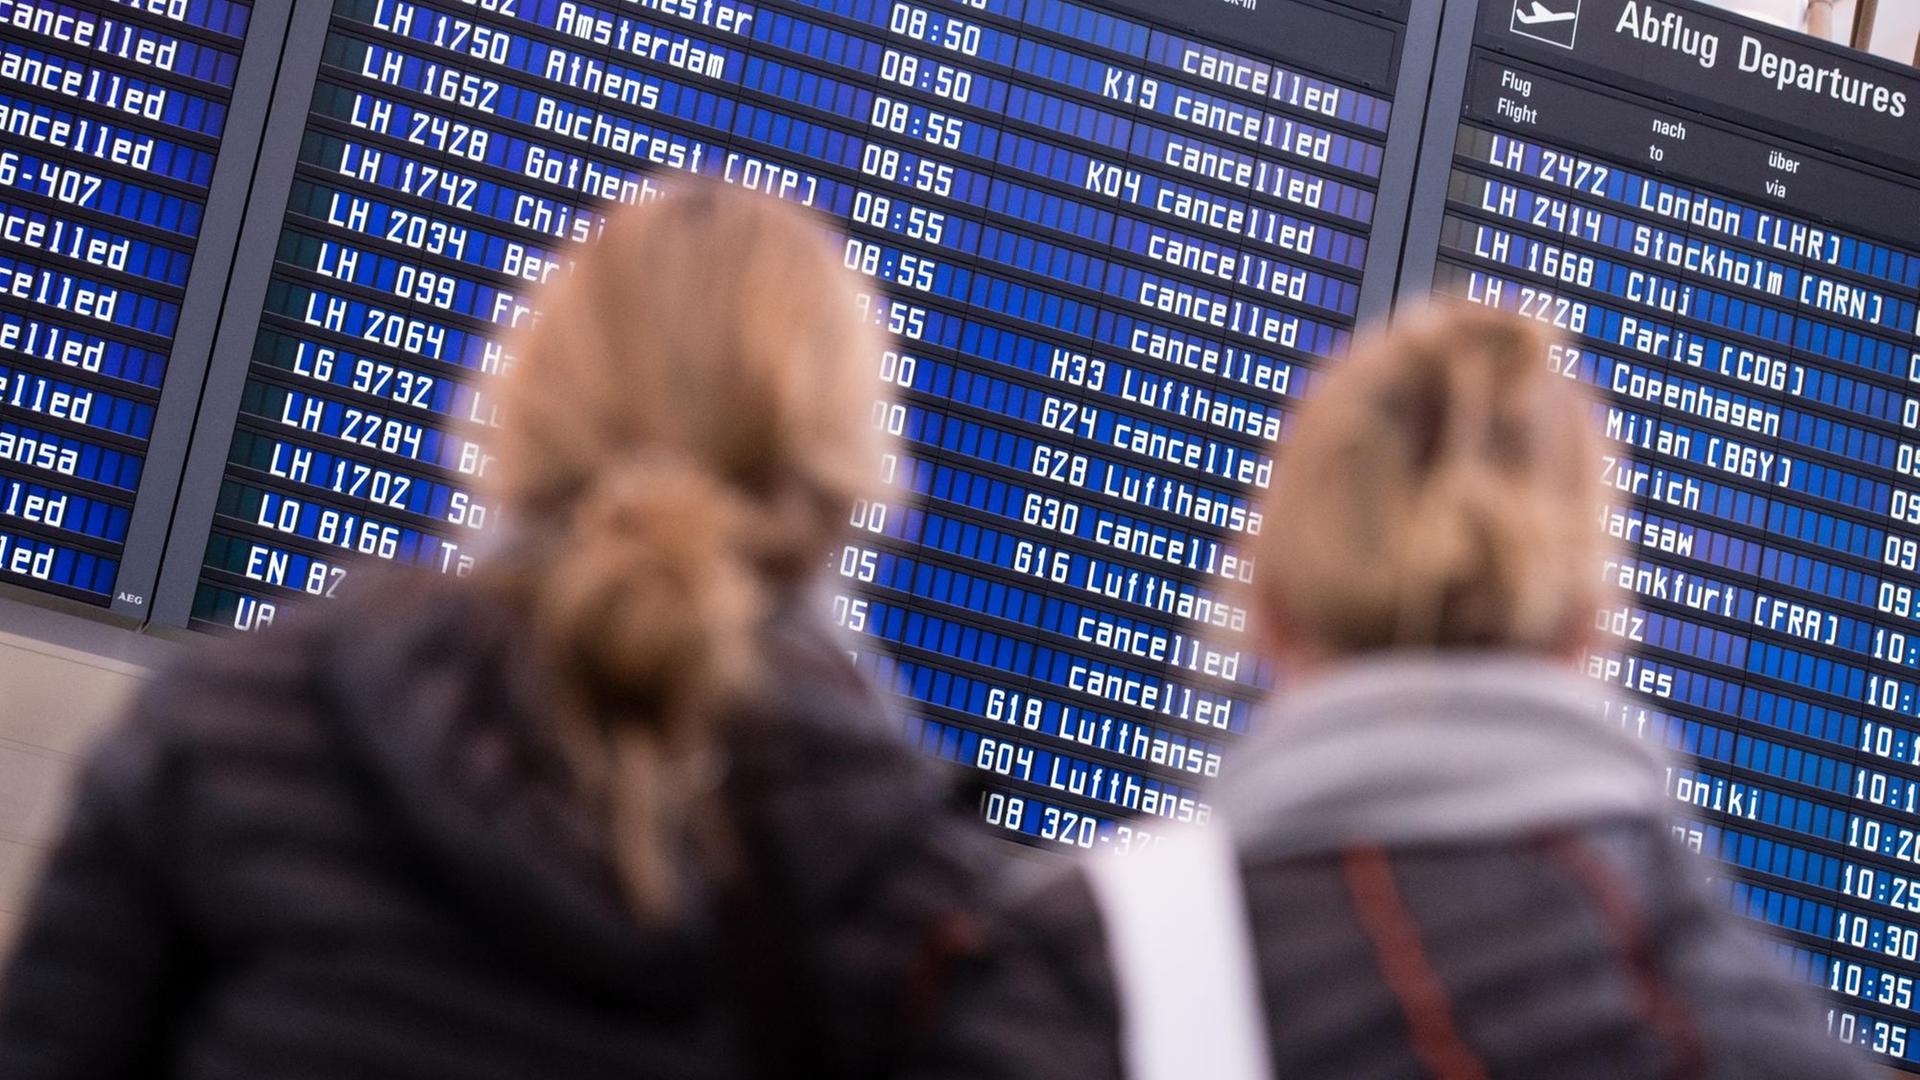 Zwei Frauen blicken am 23.11.2016 auf dem Flughafen in München (Bayern) auf Anzeigetafeln, auf denen zahlreiche annullierte Flüge der Fluggesellschaft Lufthansa ausgewiesen sind. Die Lufthansa-Piloten sind in der Nacht zum 23.11.2016 in einen zweitägigen Streik getreten.